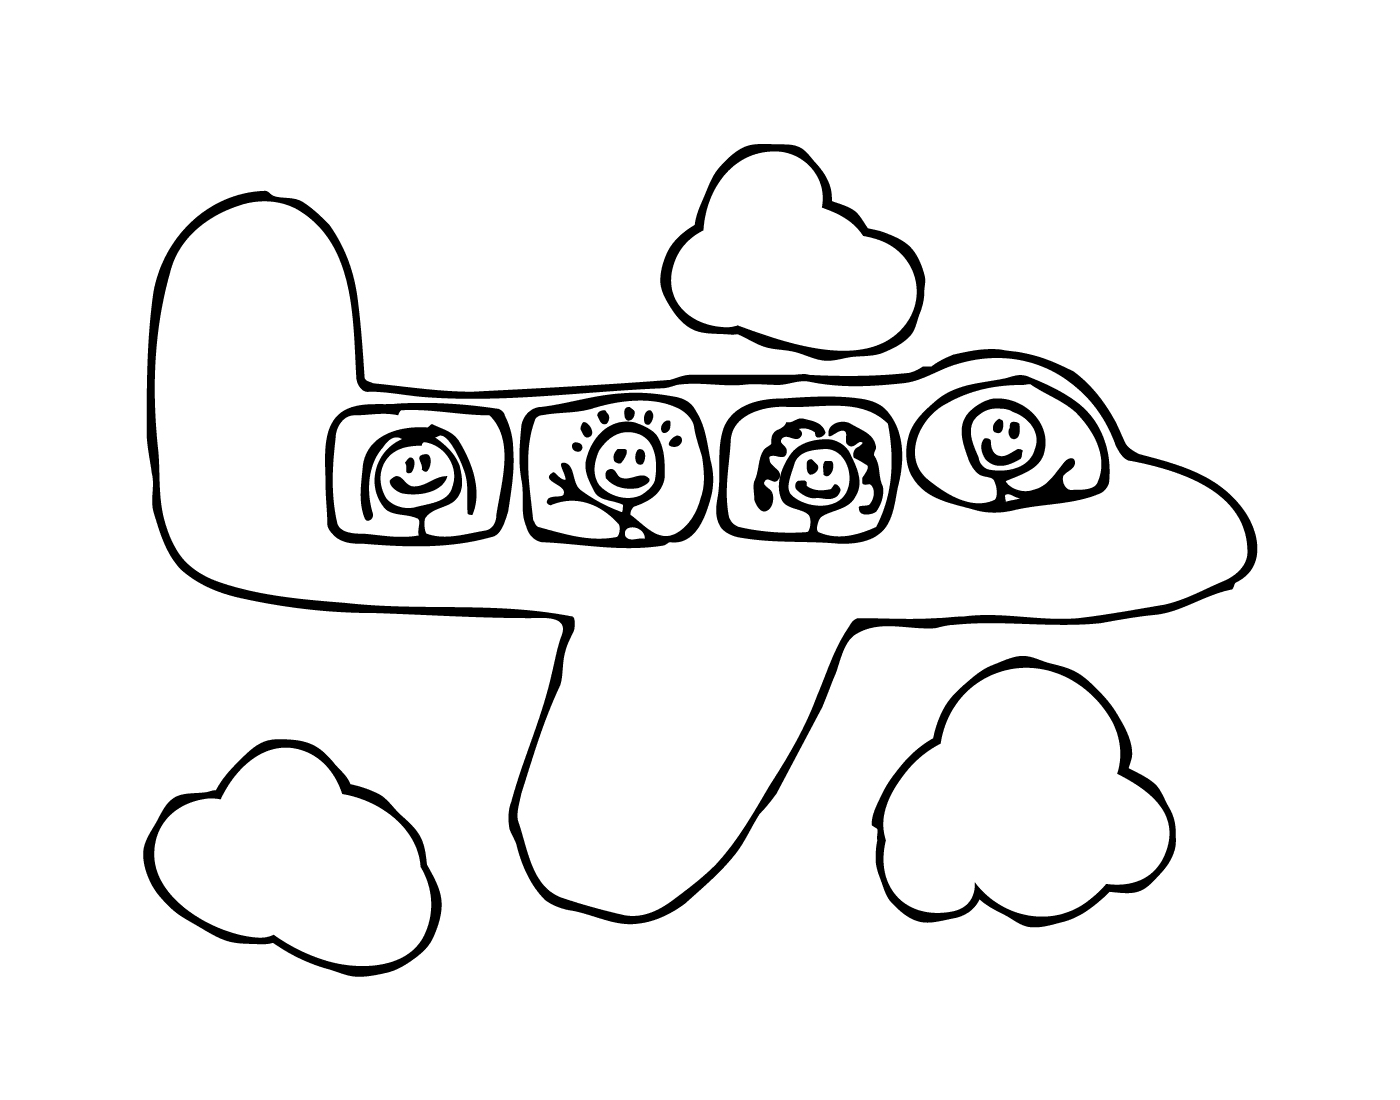  Ein Flugzeug mit vier Personen an Bord 